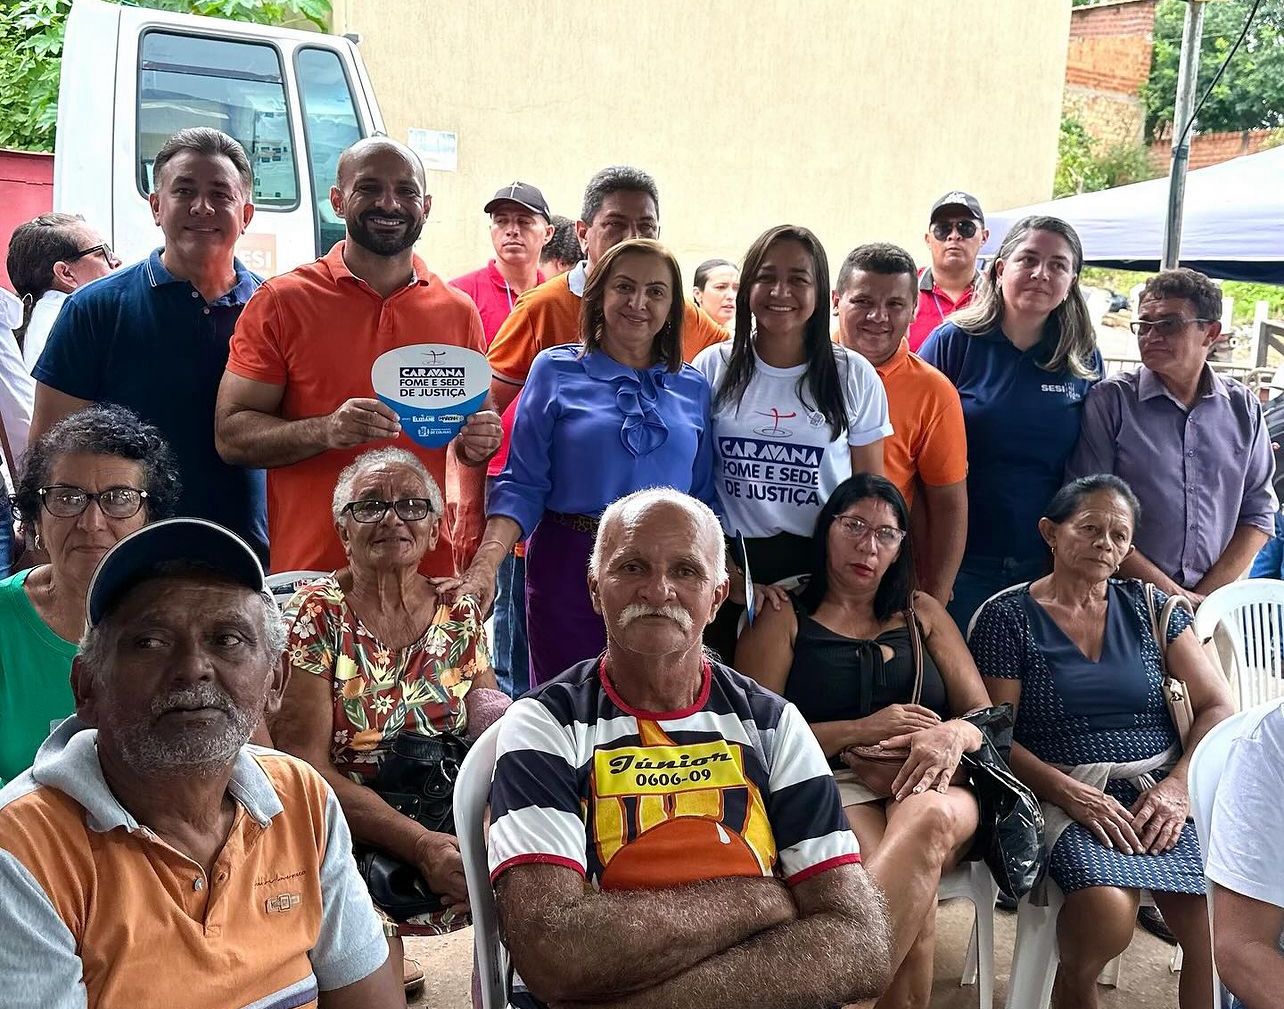 Caravana Fome e Sede de Justiça realiza ação social em Colinas